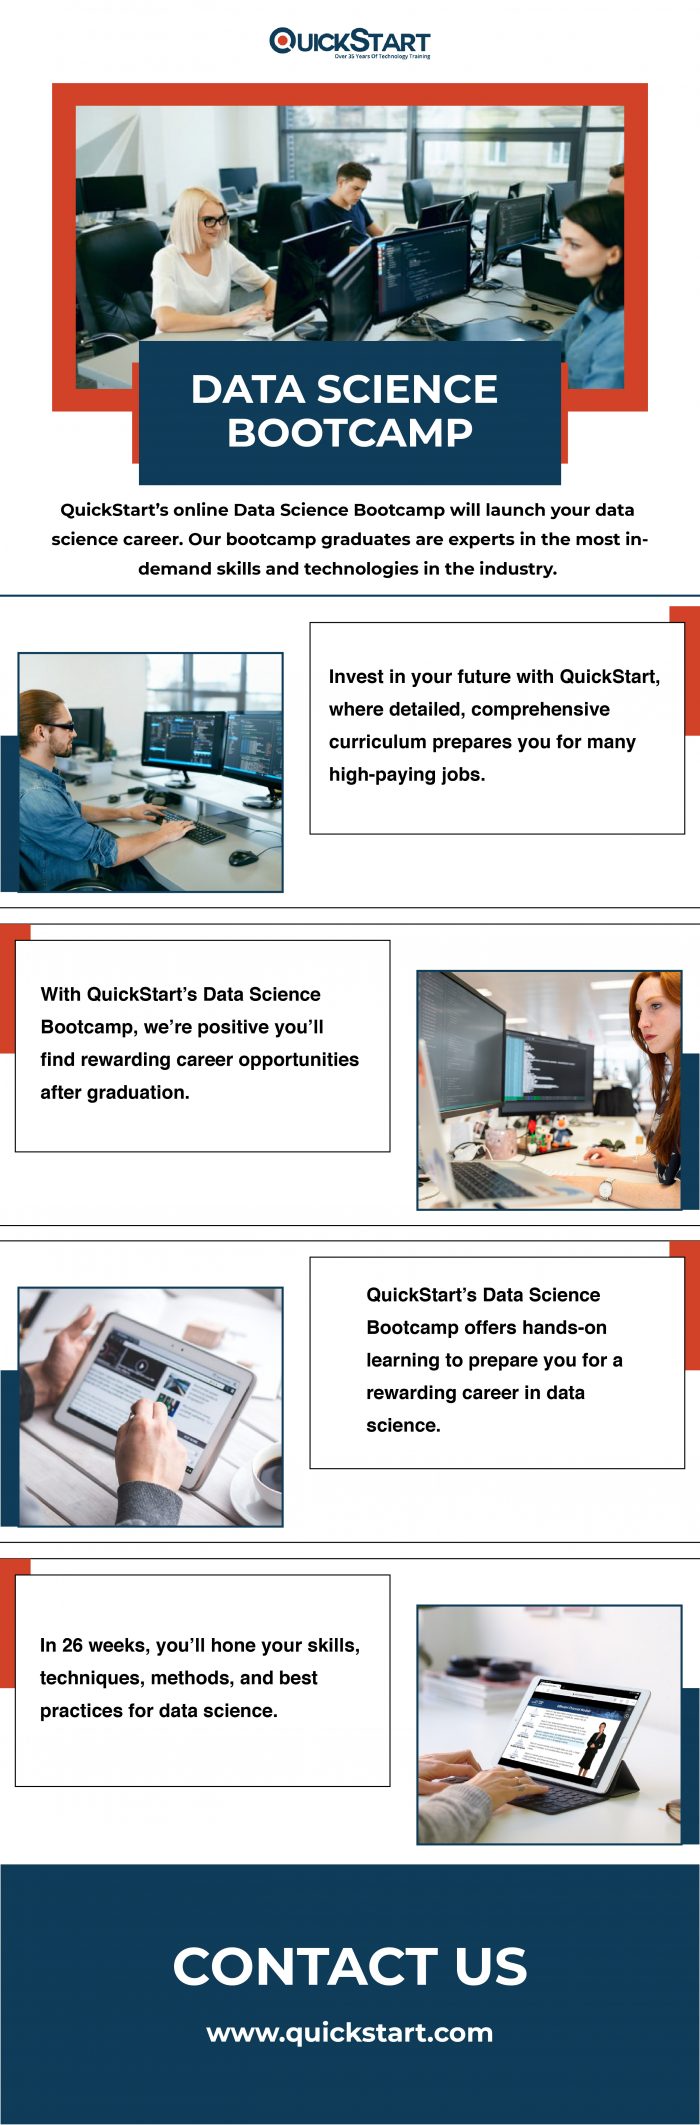 Best Online Data Science Bootcamp from Quickstart